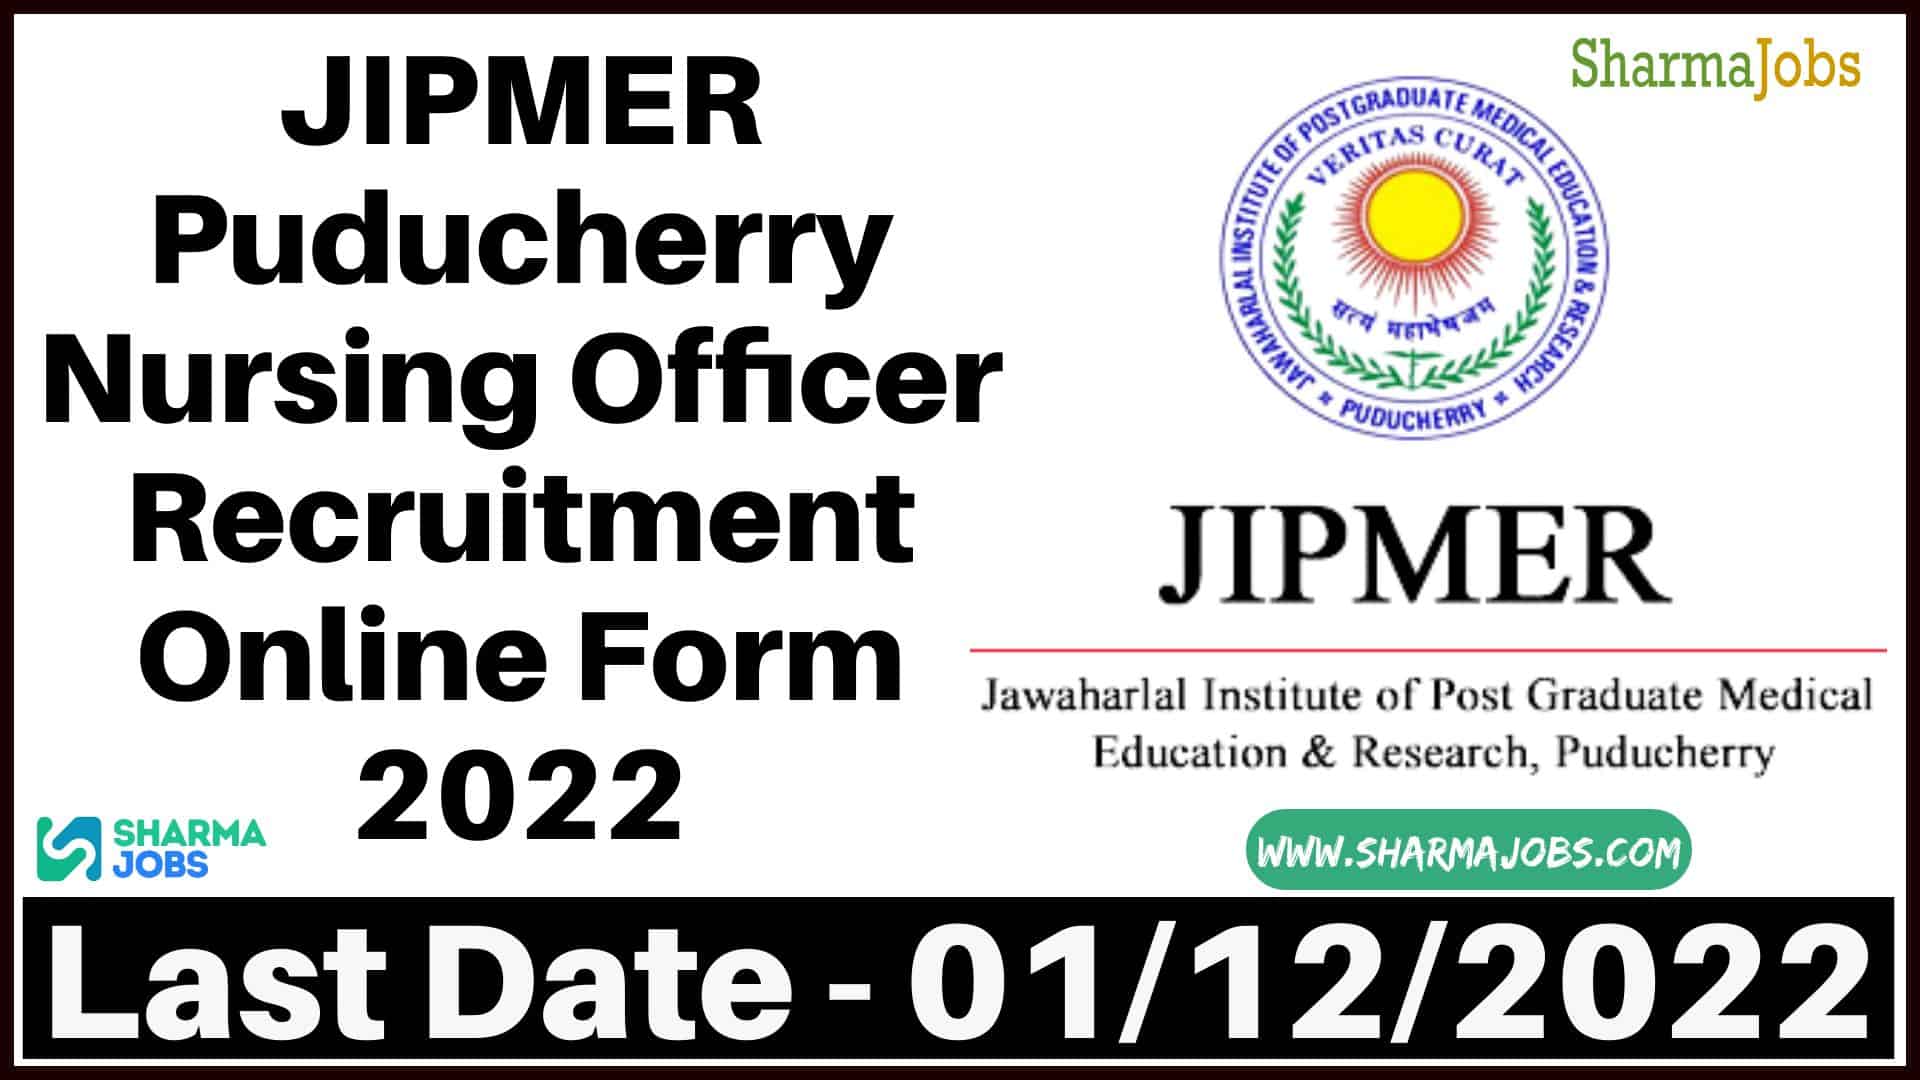 JIPMER Puducherry Nursing Officer Recruitment Online Form 2022